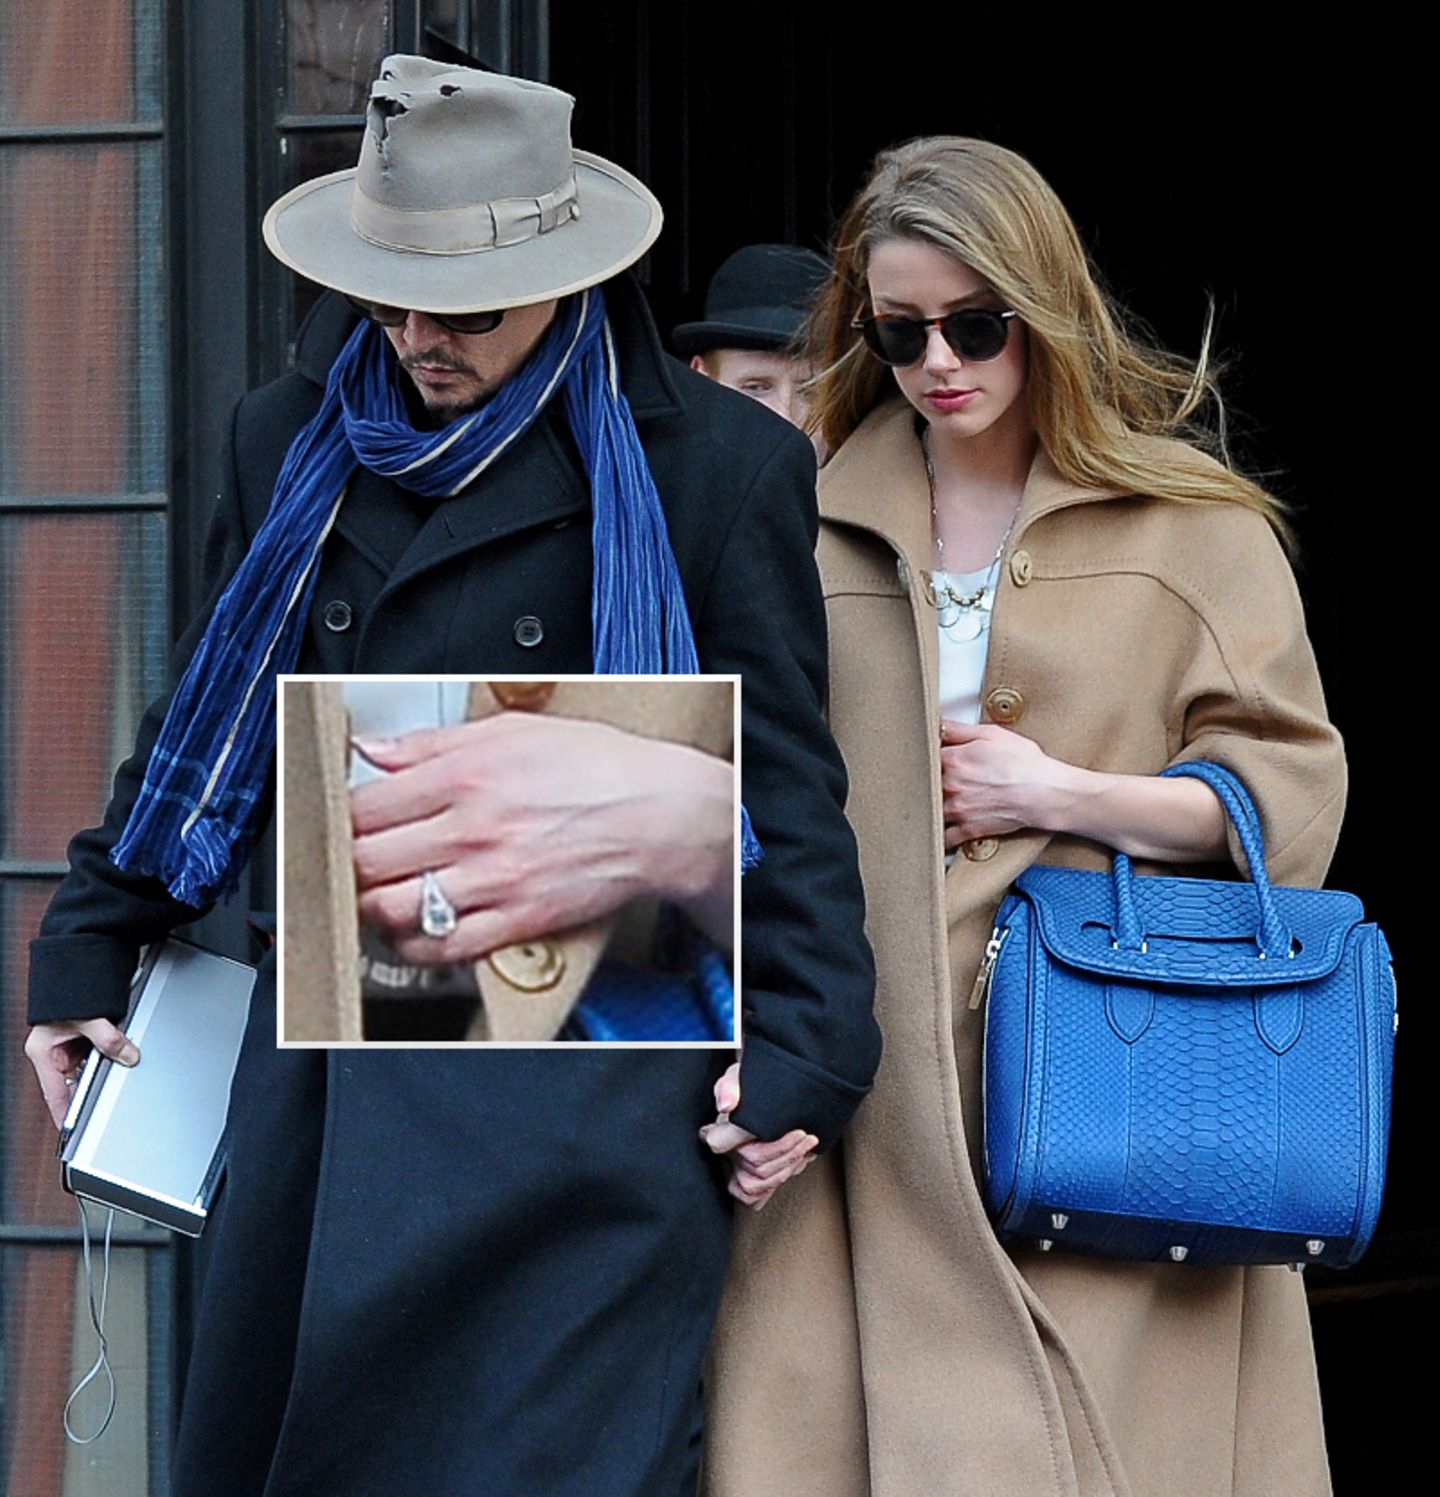 Johnny Depp und Amber Heard  Nur wenige Tage nach ihrer Verlobungsparty zeigen sich Johnny Depp und Amber Heard Händchen haltend in New York. Dabei ist das Paar mit blauen Accessoires modisch aufeinander abgestimmt. Auch Amber Heards Verlobungsring ist zu sehen.